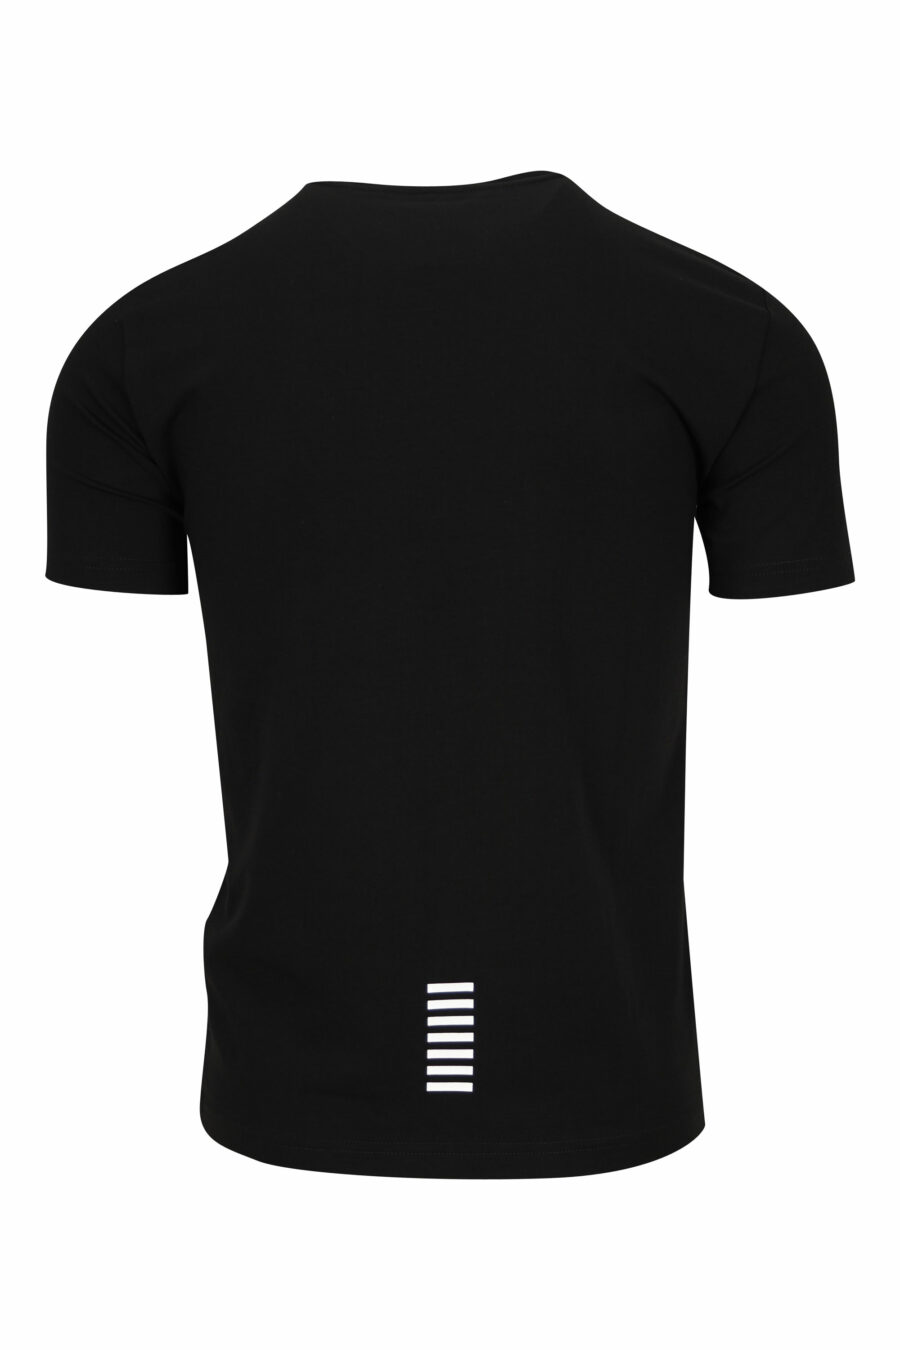 Schwarzes T-Shirt mit Gummi "lux identity" minilogue - 8055187168106 1